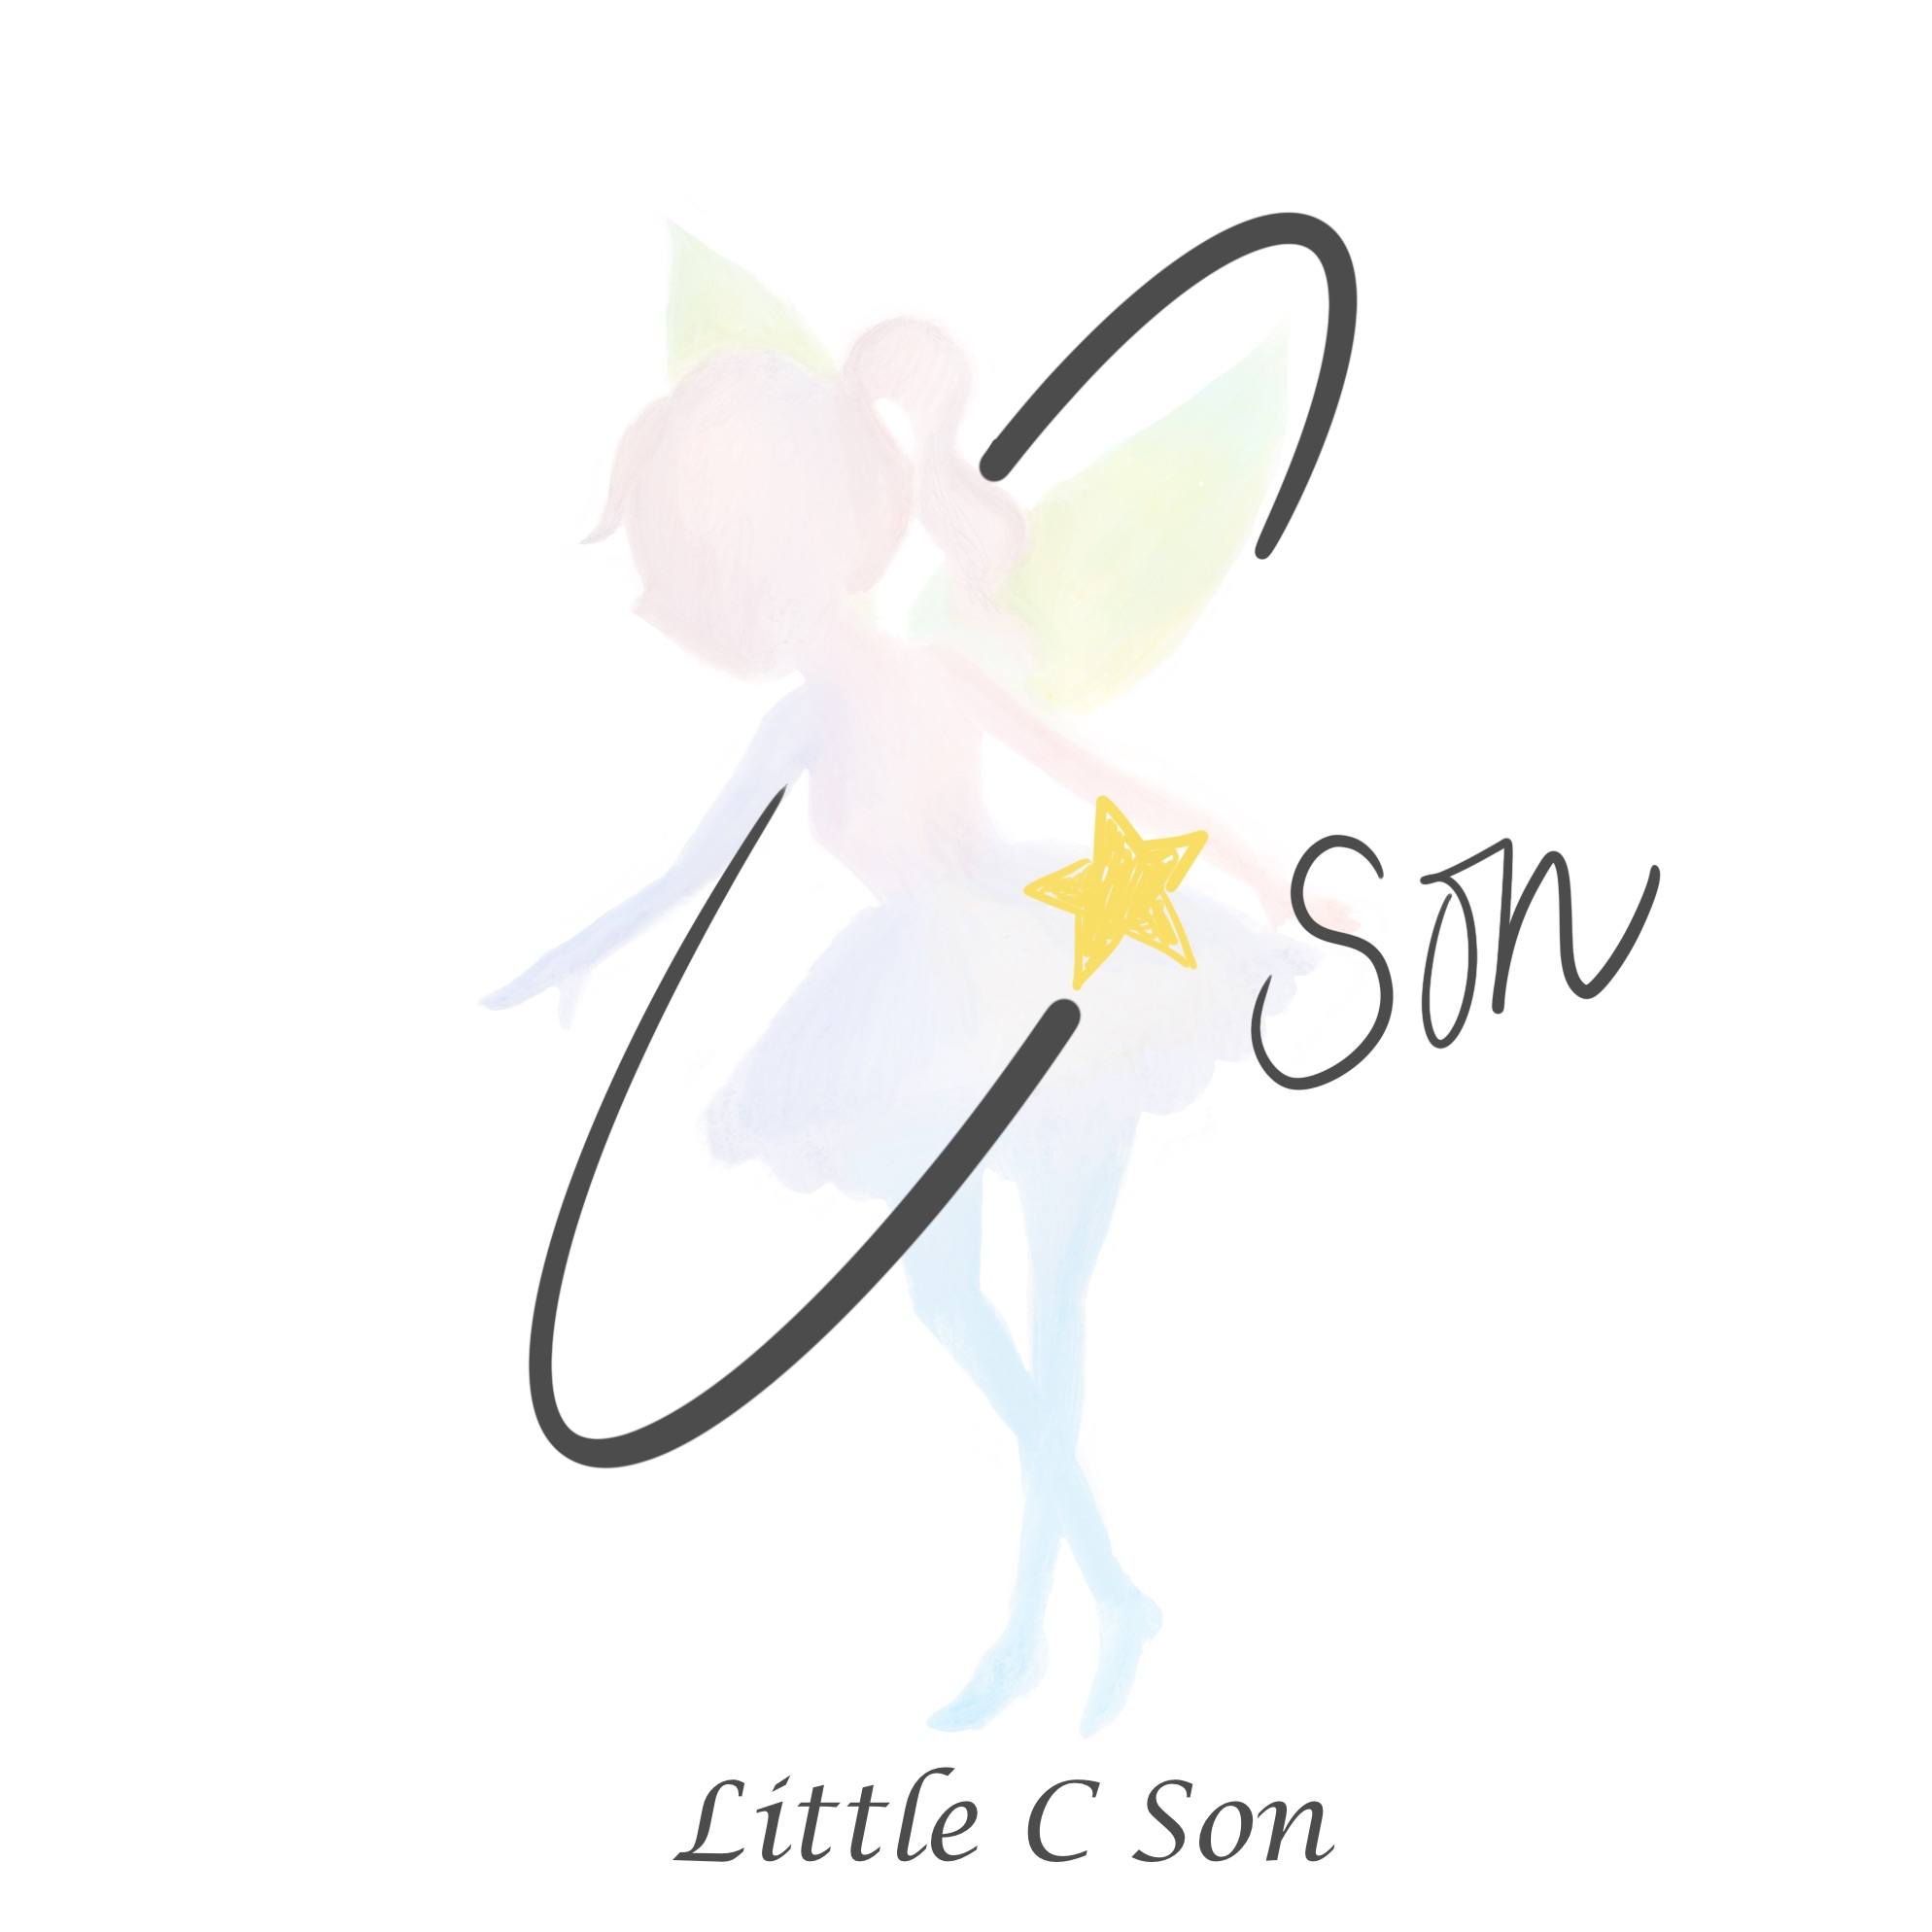 Little C Son